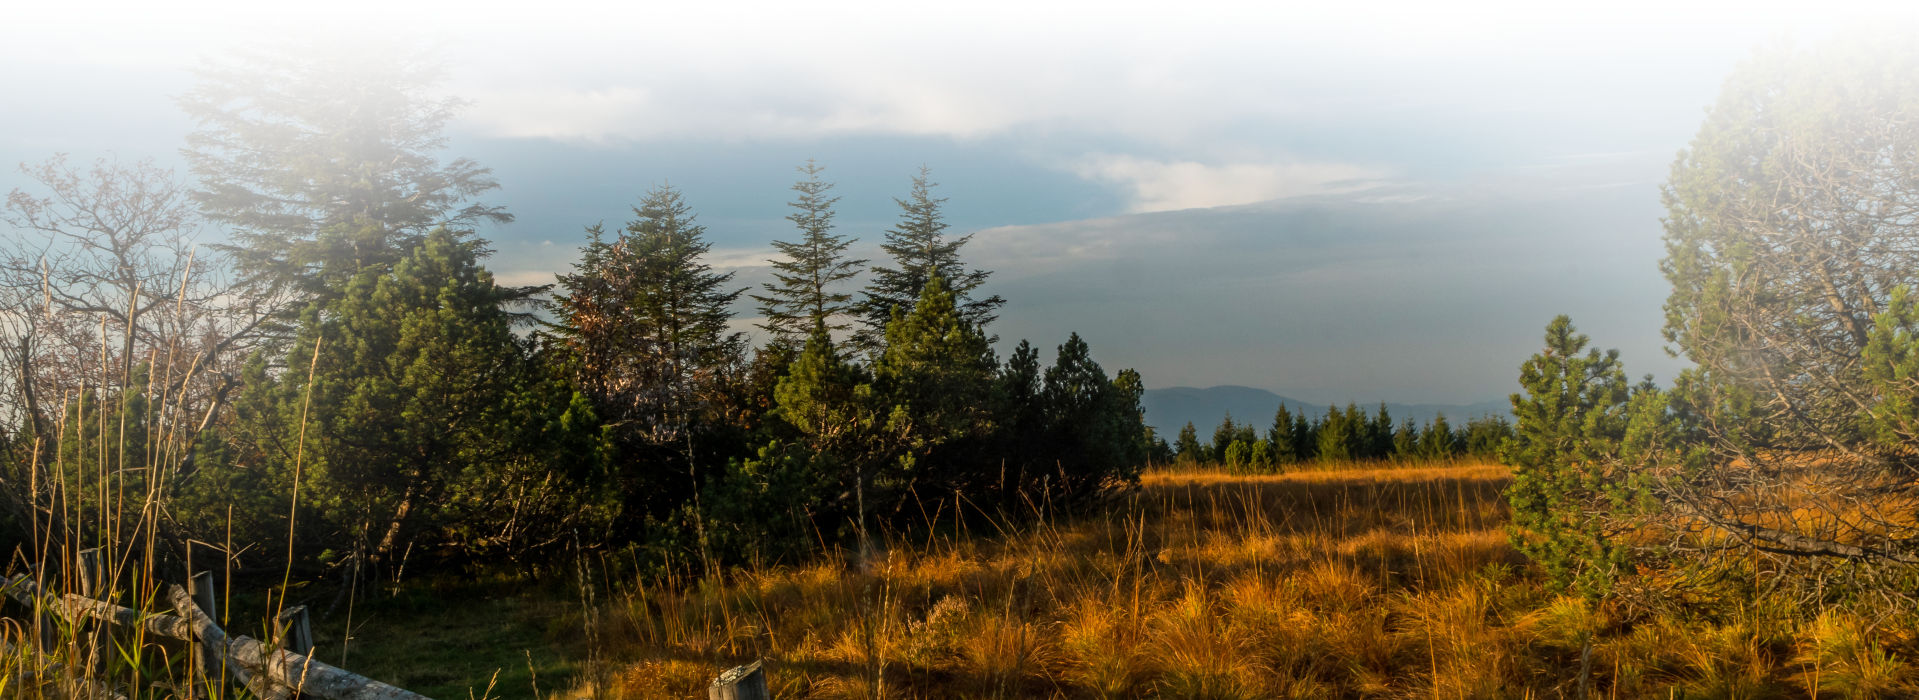 Herbstliche Heidelandschaft unter blauem, fast wolkenlosen Himmel. Im Hintergrund ist eine Nadelwaldkulisse, im Vordergrund typischer Heidebewuchs mit Sträuchern und Gräsern, herbstlich braun verfärbt.